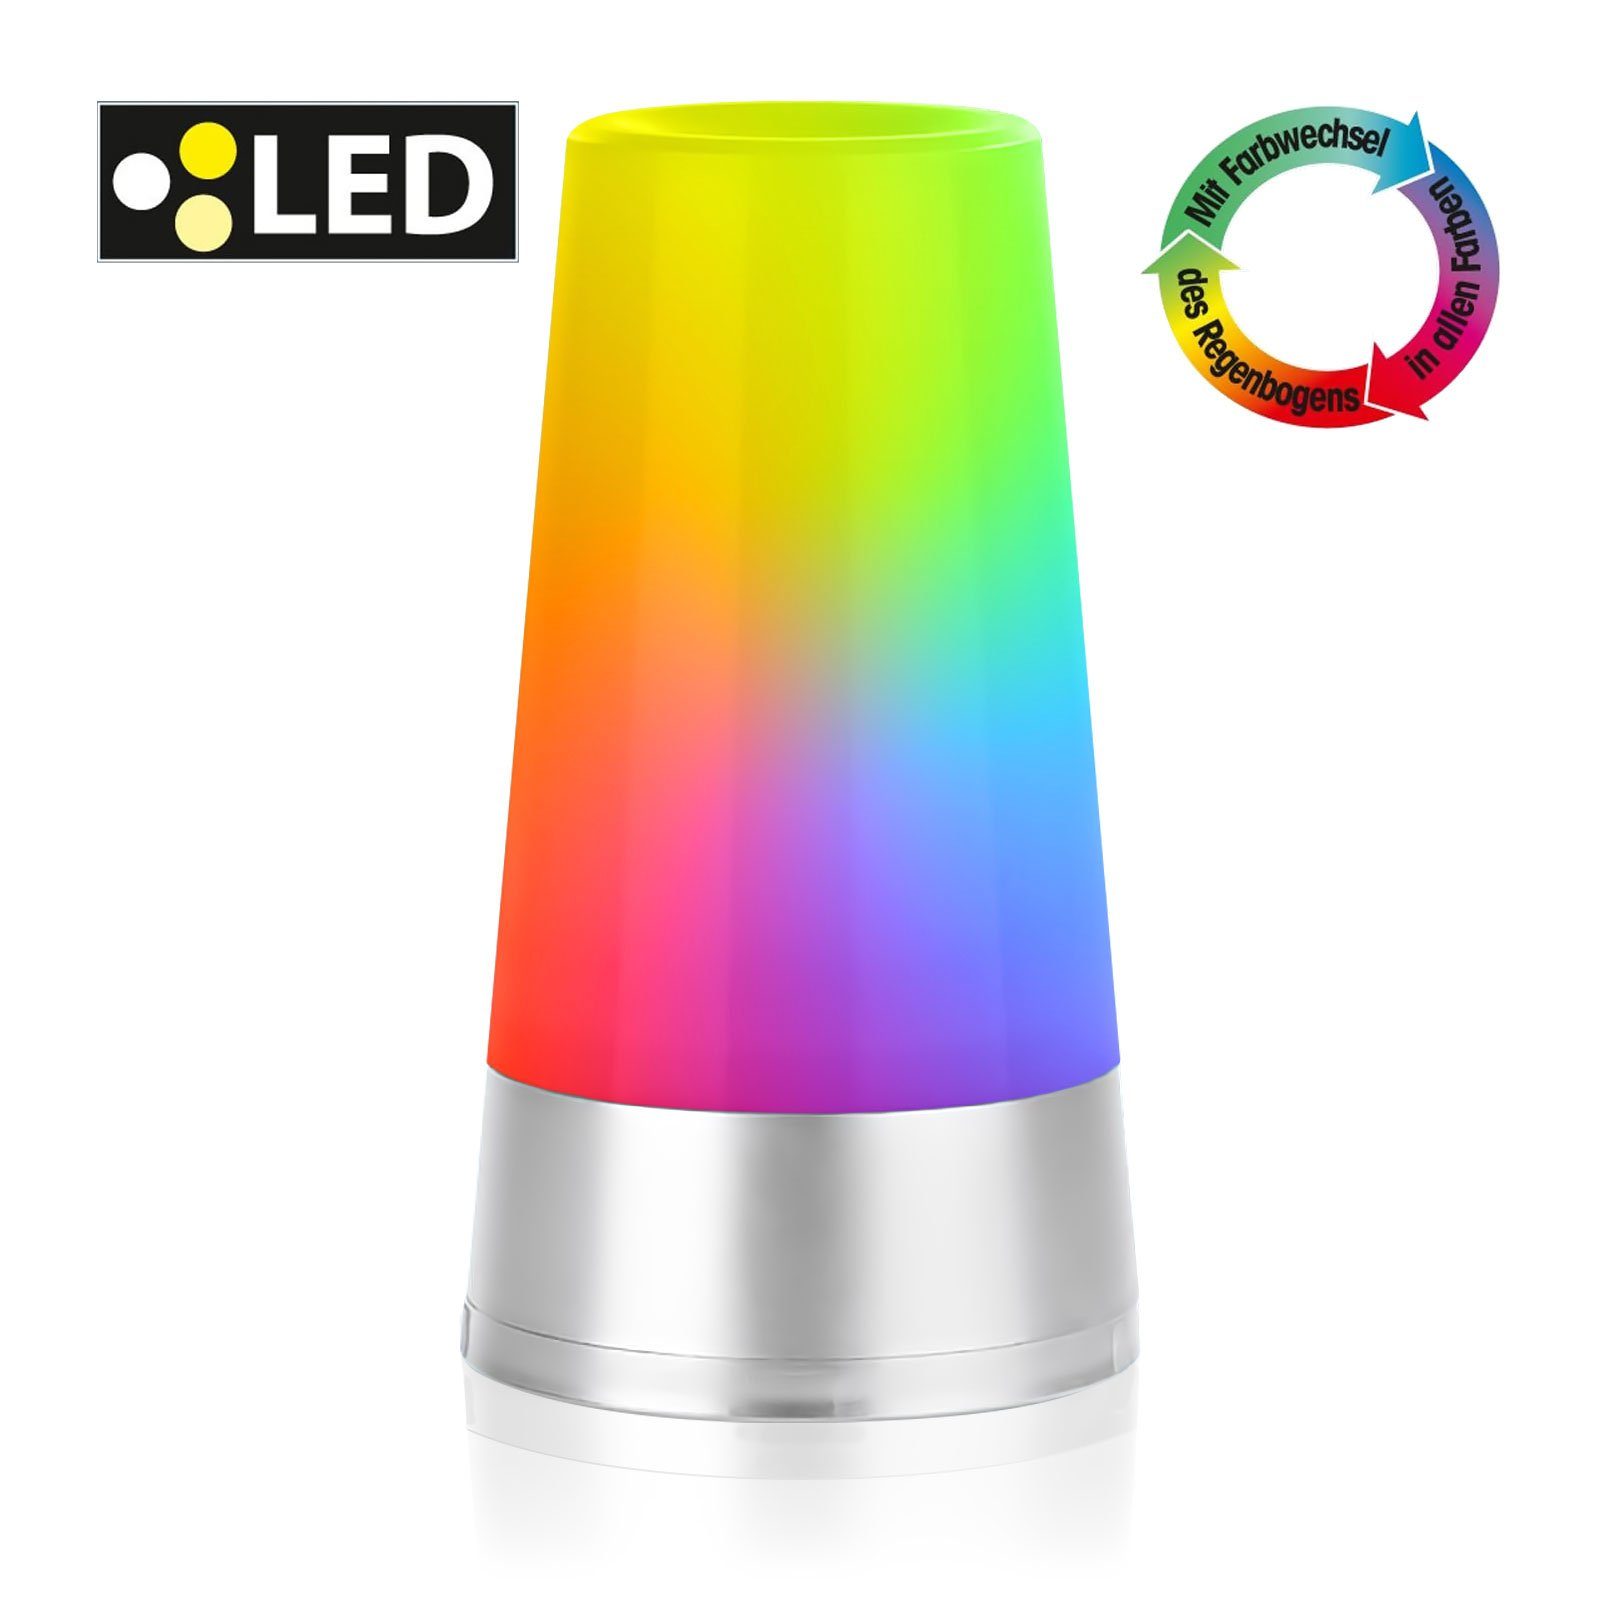 integriert, Lichtstreuung LED 360° fest mit LED RGB-Farbwechsel, Farbenpracht, Wunderschöne EAXUS RGB-Farbwechsel, - Stimmungslicht Nachtlicht/Nachttischlampe, Tischleuchte